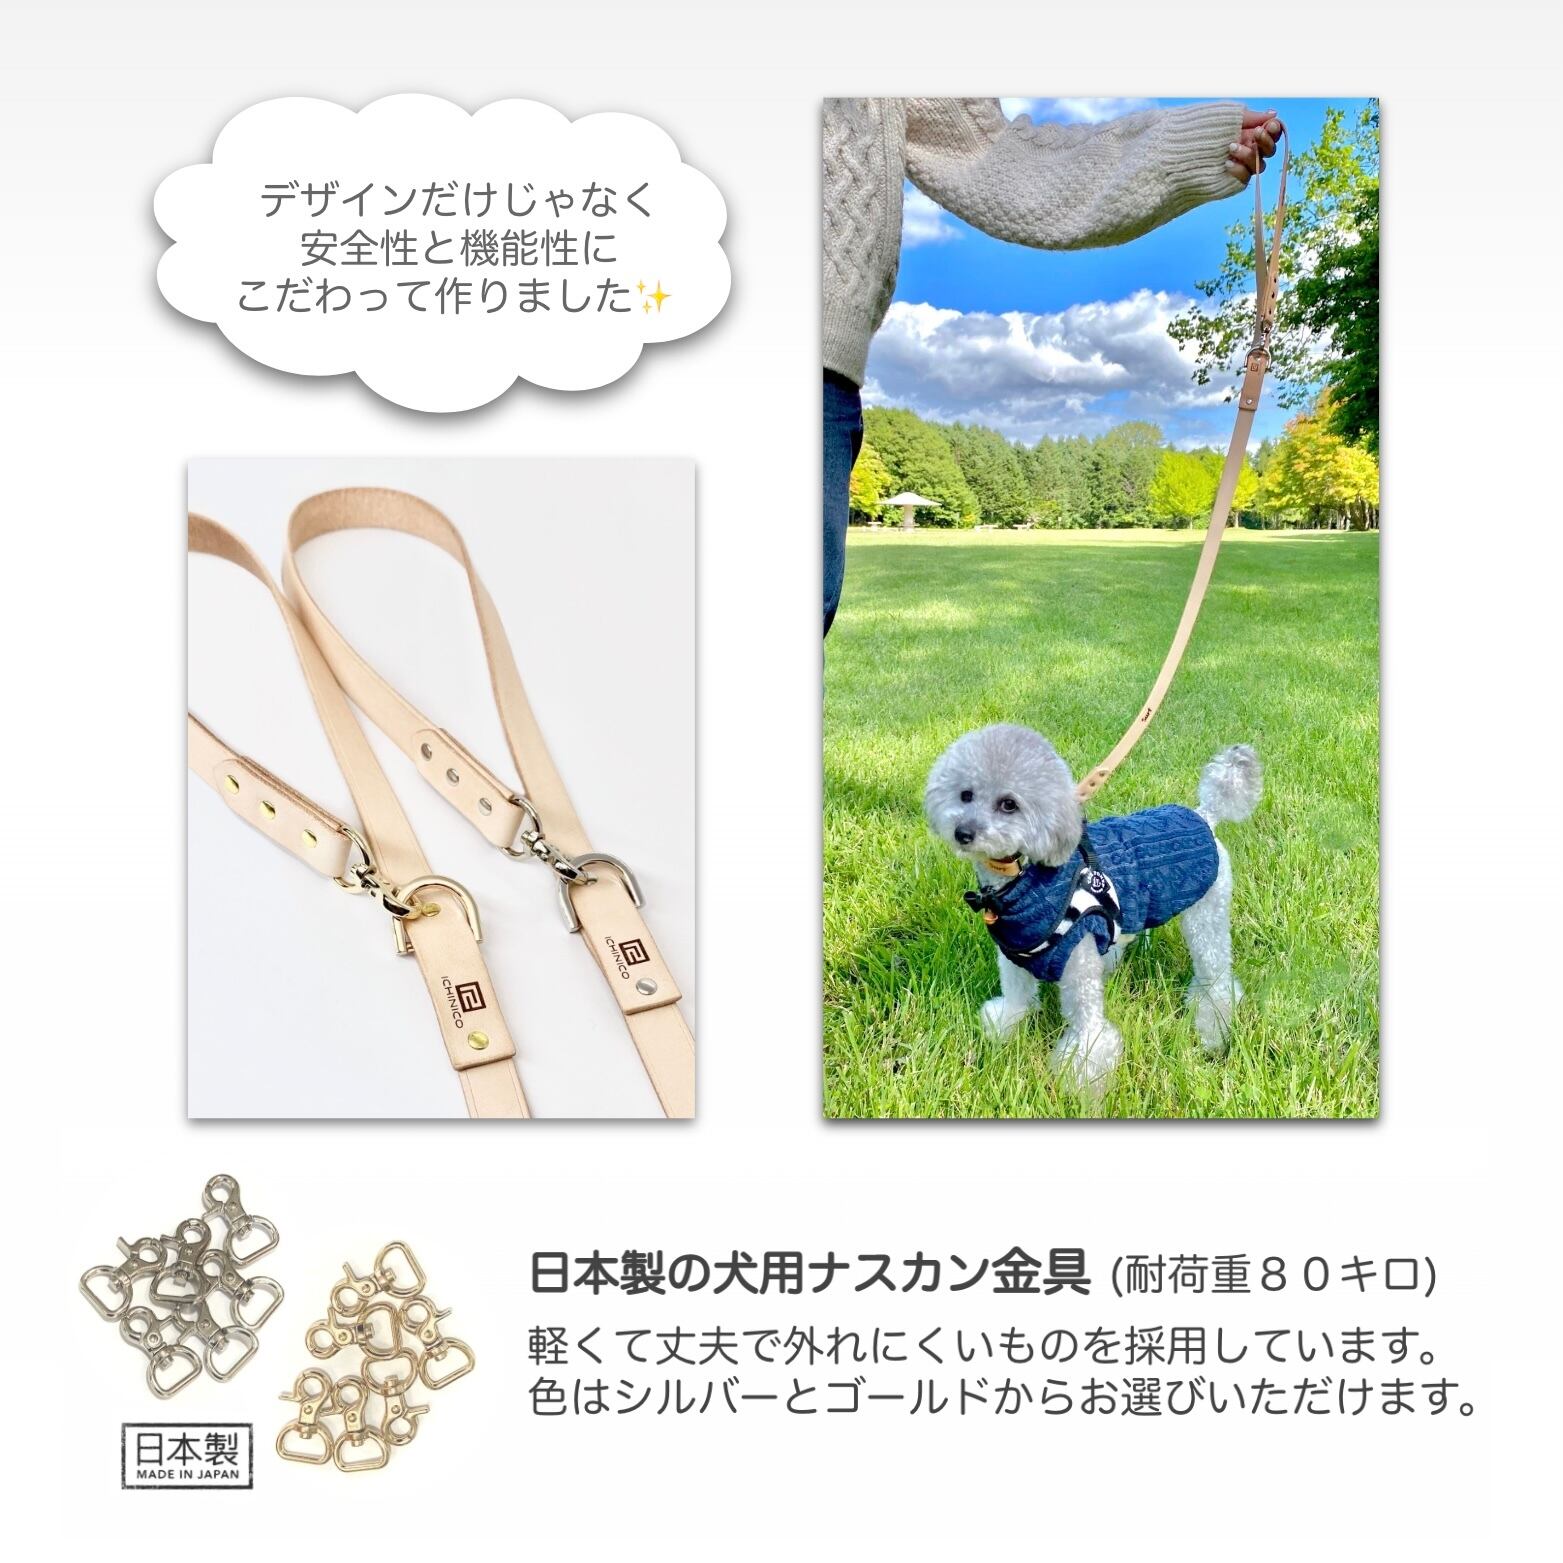 マルチリード / ヌメ本革 北海道レザー dog leash